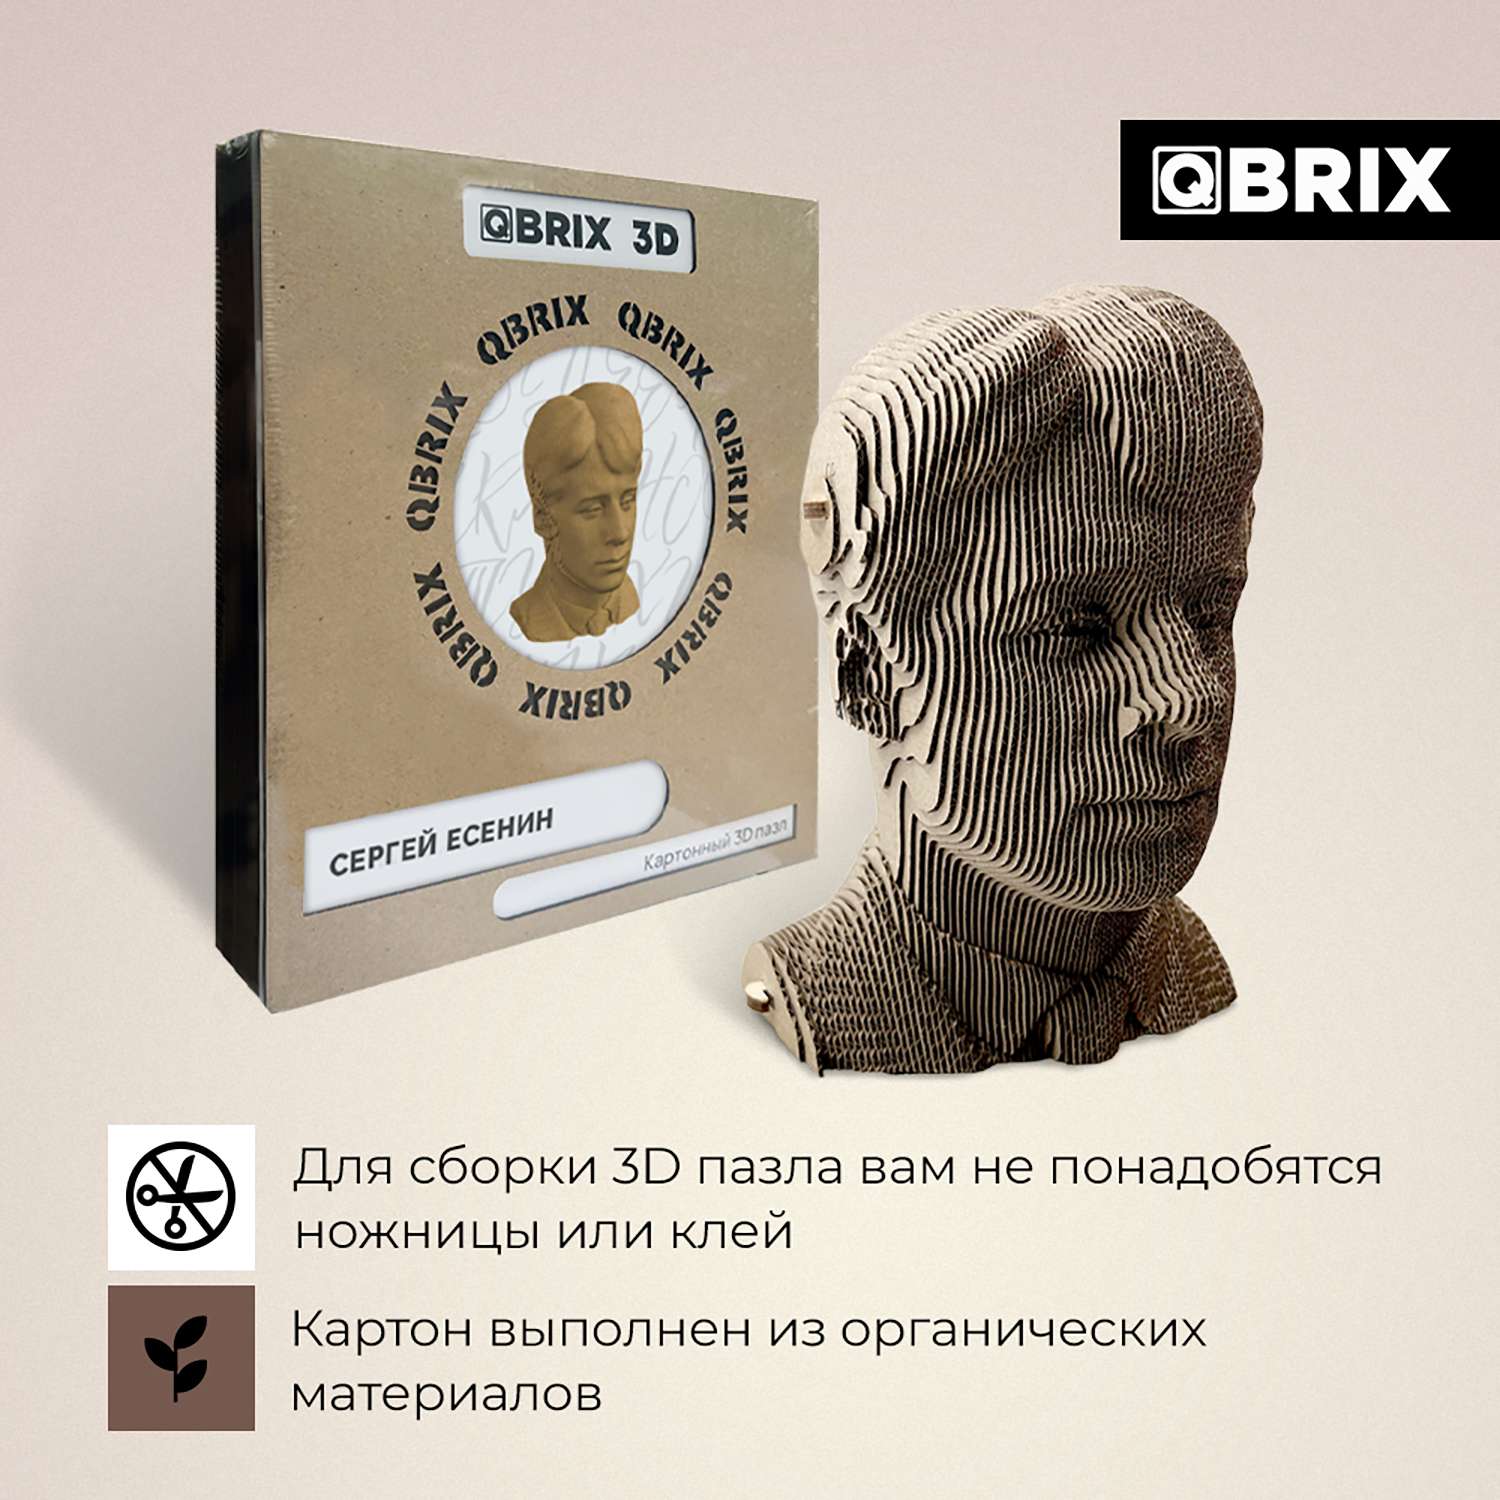 Конструктор QBRIX 3D картонный Сергей Есенин 20010 20010 - фото 3